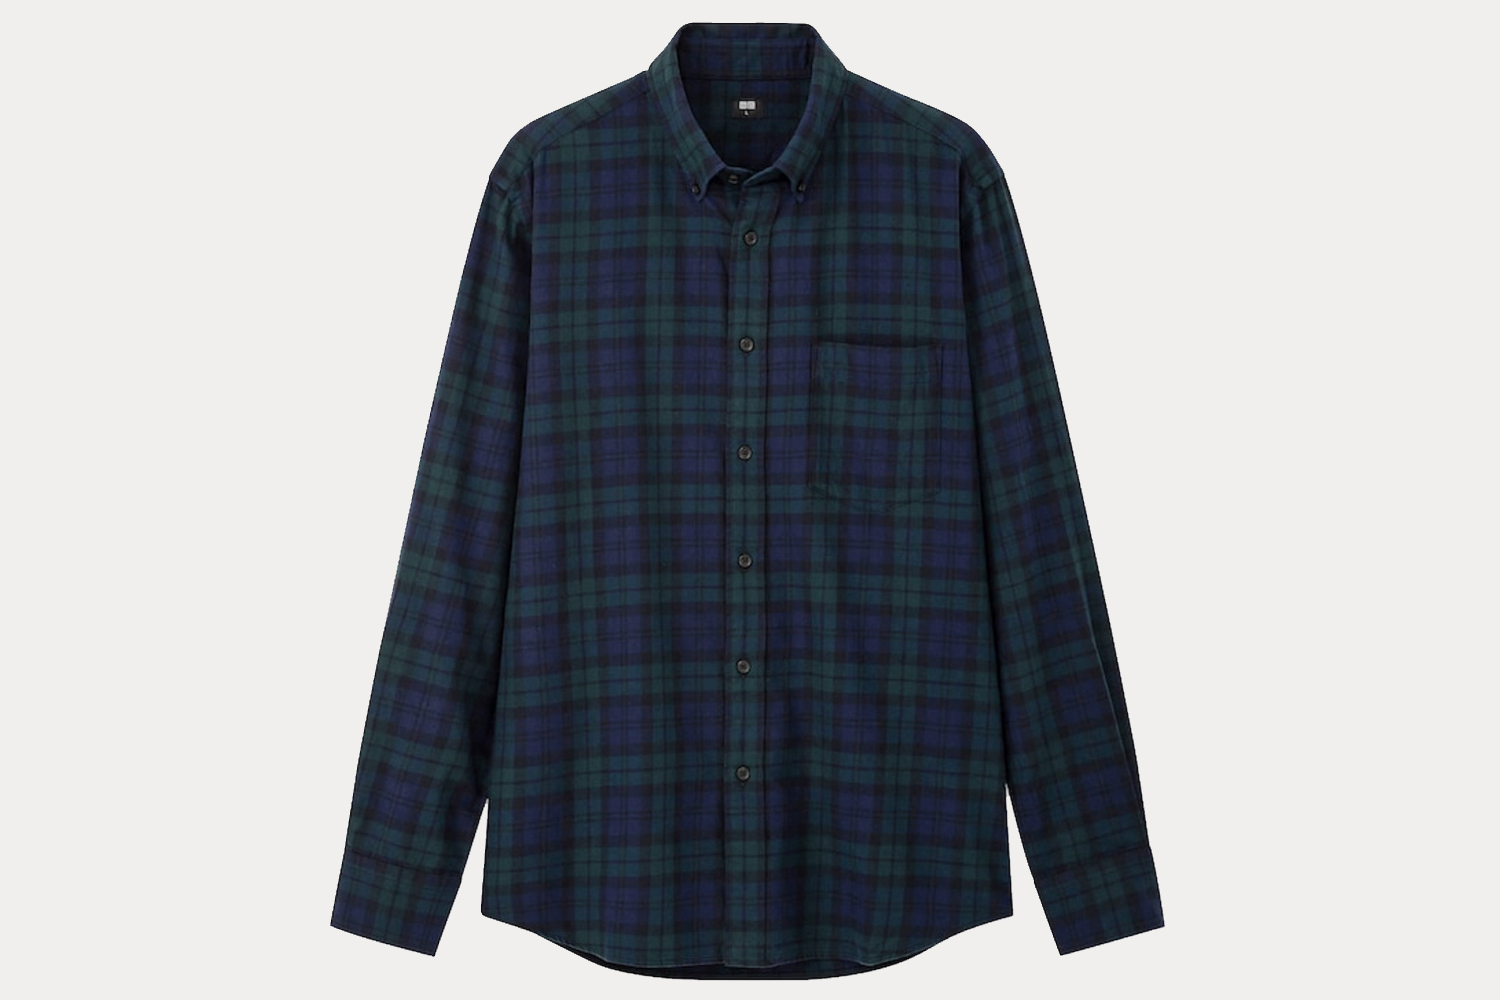 Uniqlo flannel shirt